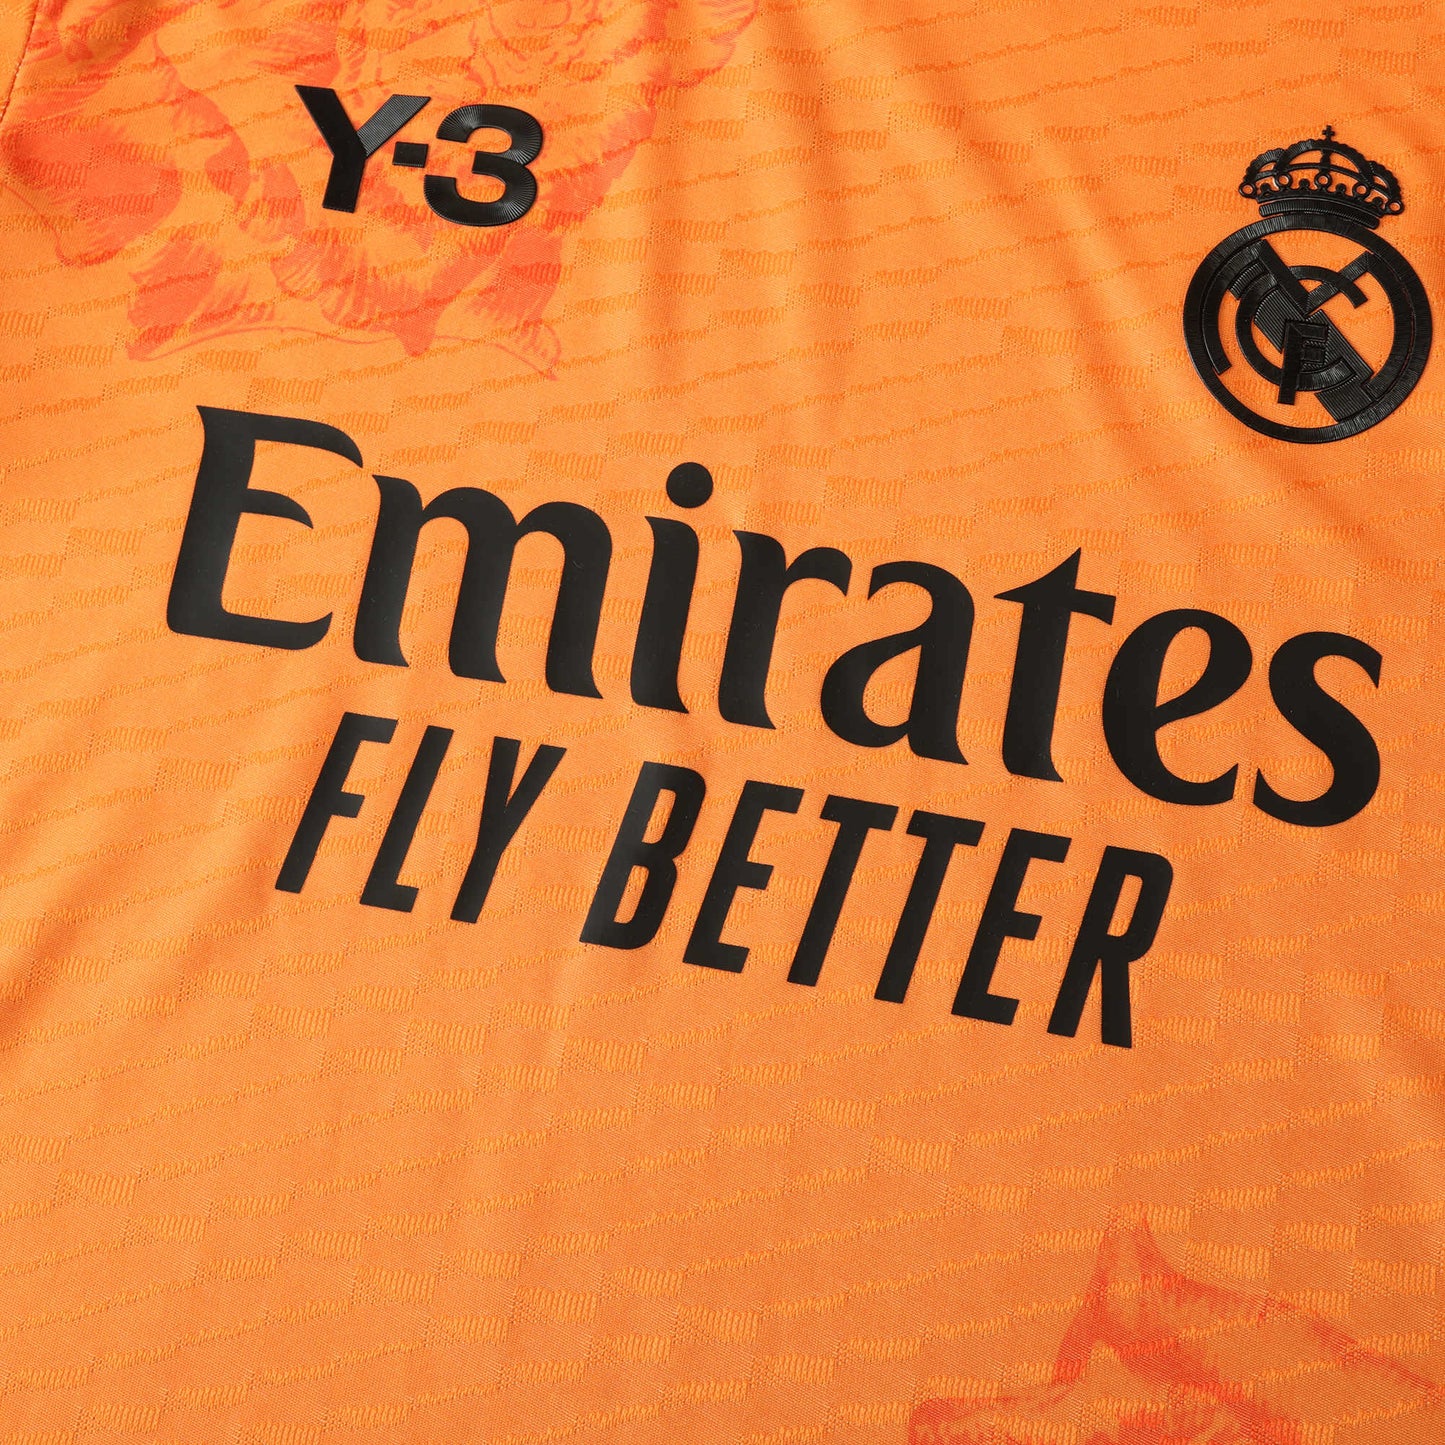 Real Madrid Orange Özel Sürüm Forması